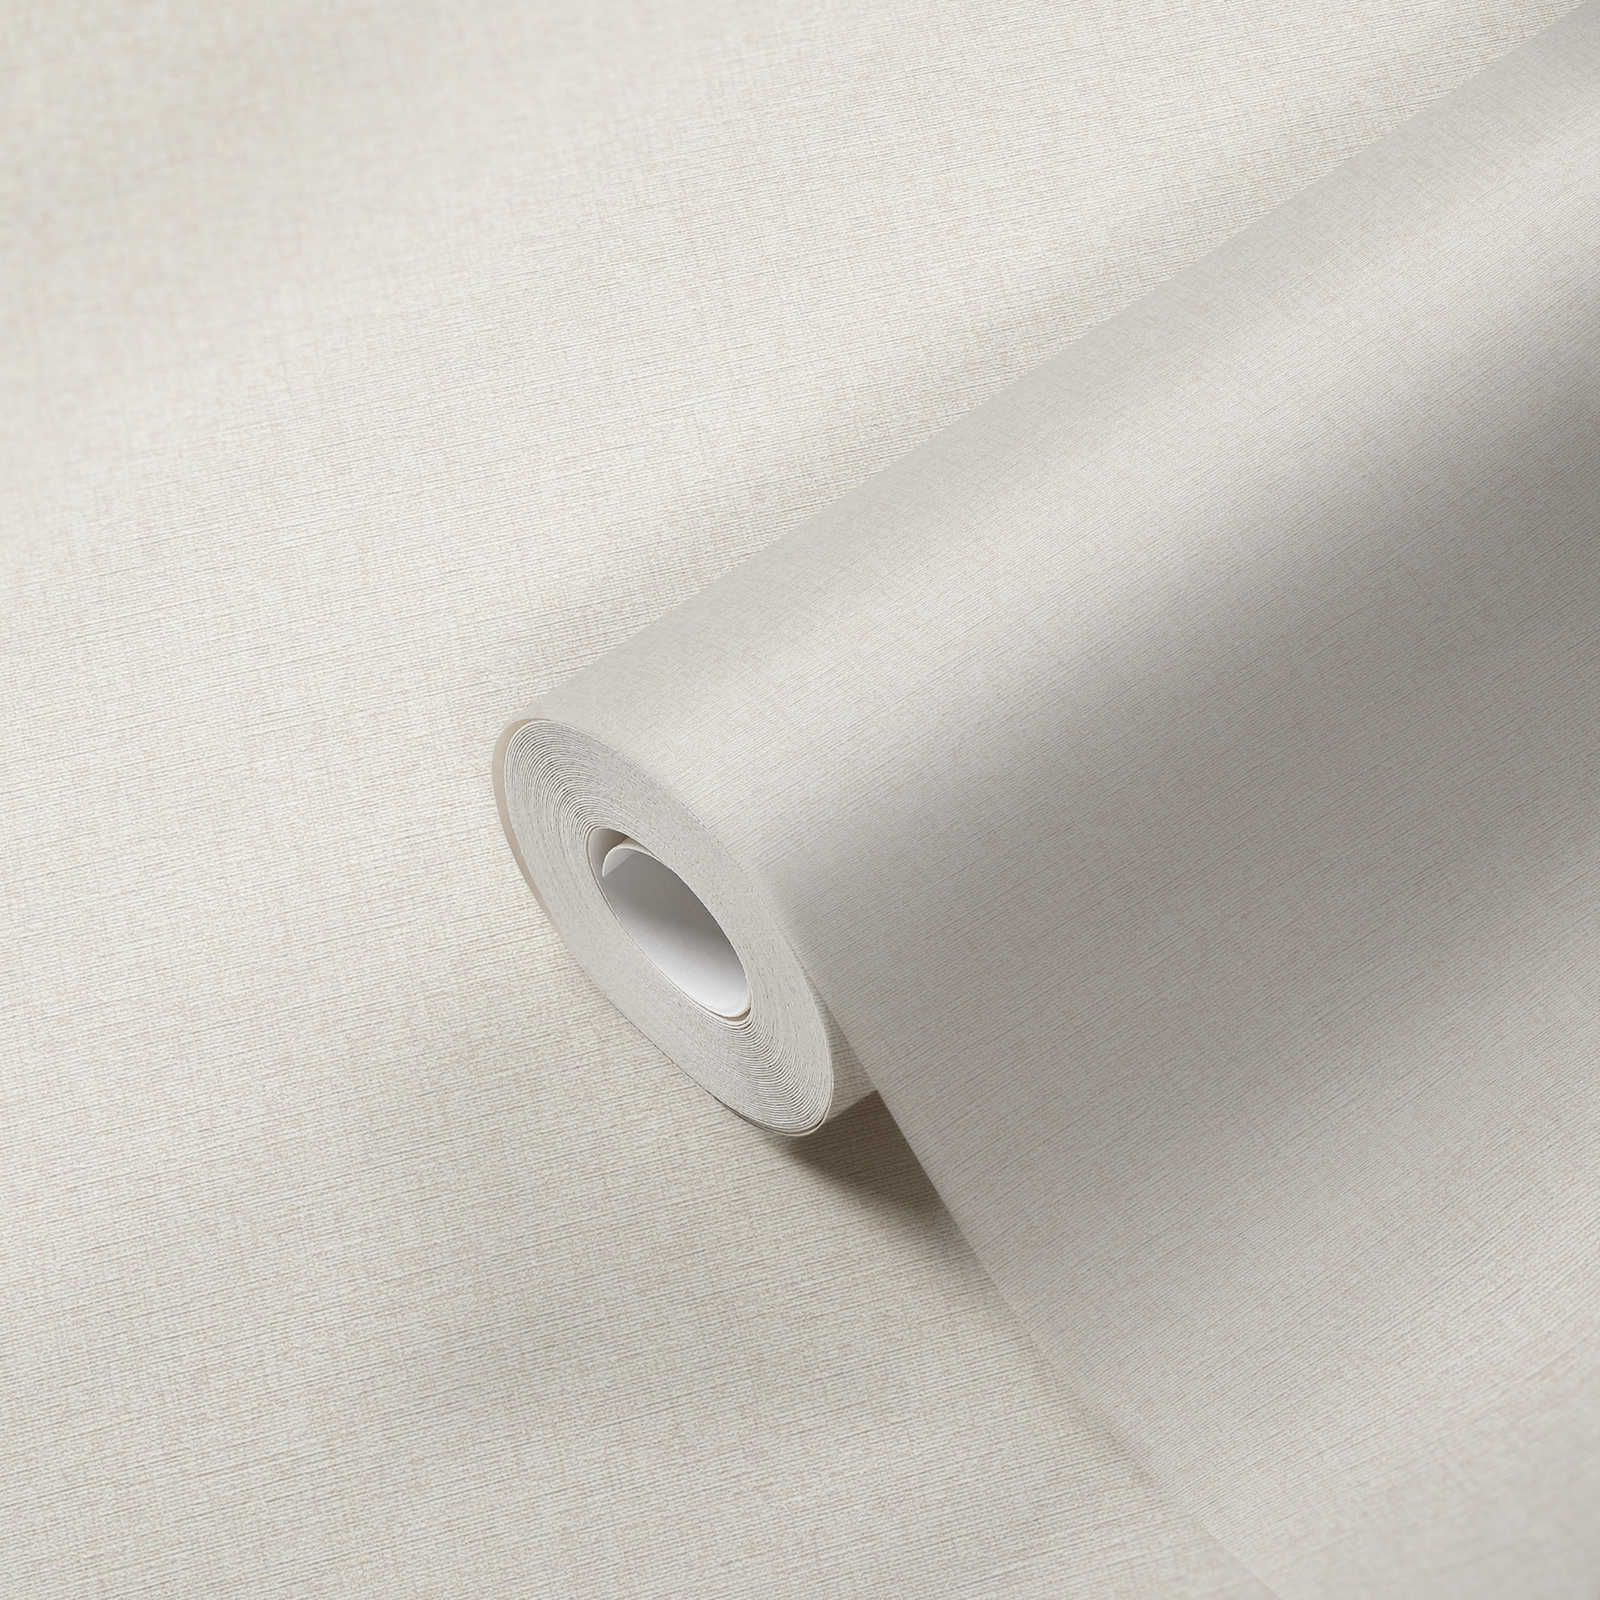             Plain non-woven wallpaper with structure design, matt - cream, white
        